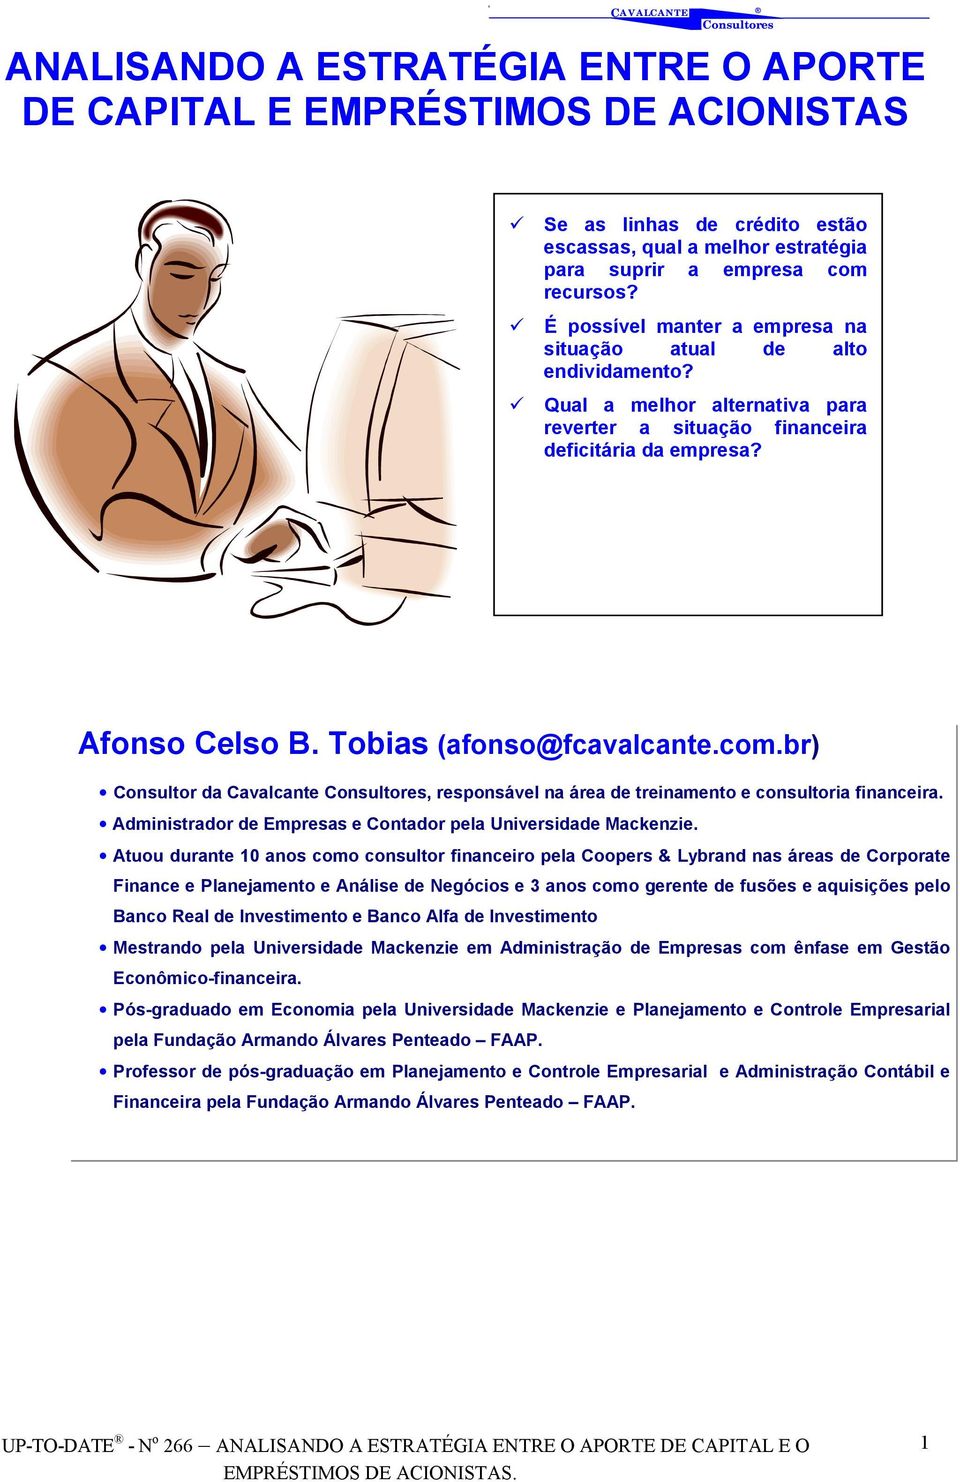 Tobias (afonso@fcavalcante.com.br) Consultor da Cavalcante, responsável na área de treinamento e consultoria financeira. Administrador de Empresas e Contador pela Universidade Mackenzie.